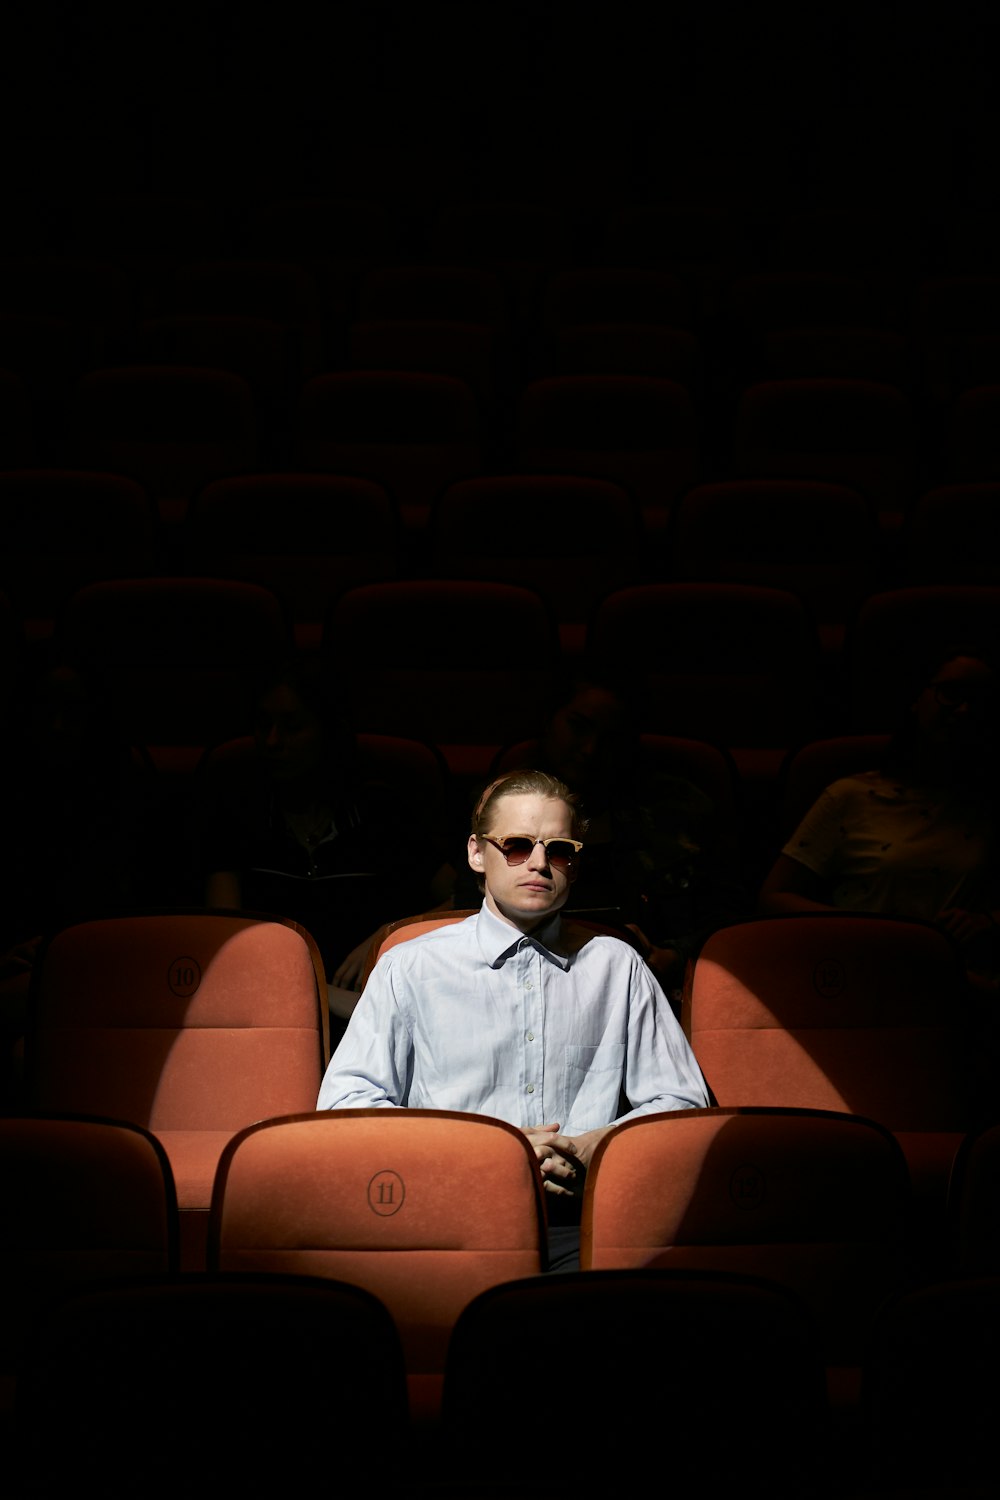 homme en chemise bleue portant des lunettes de soleil assis sur une chaise marron